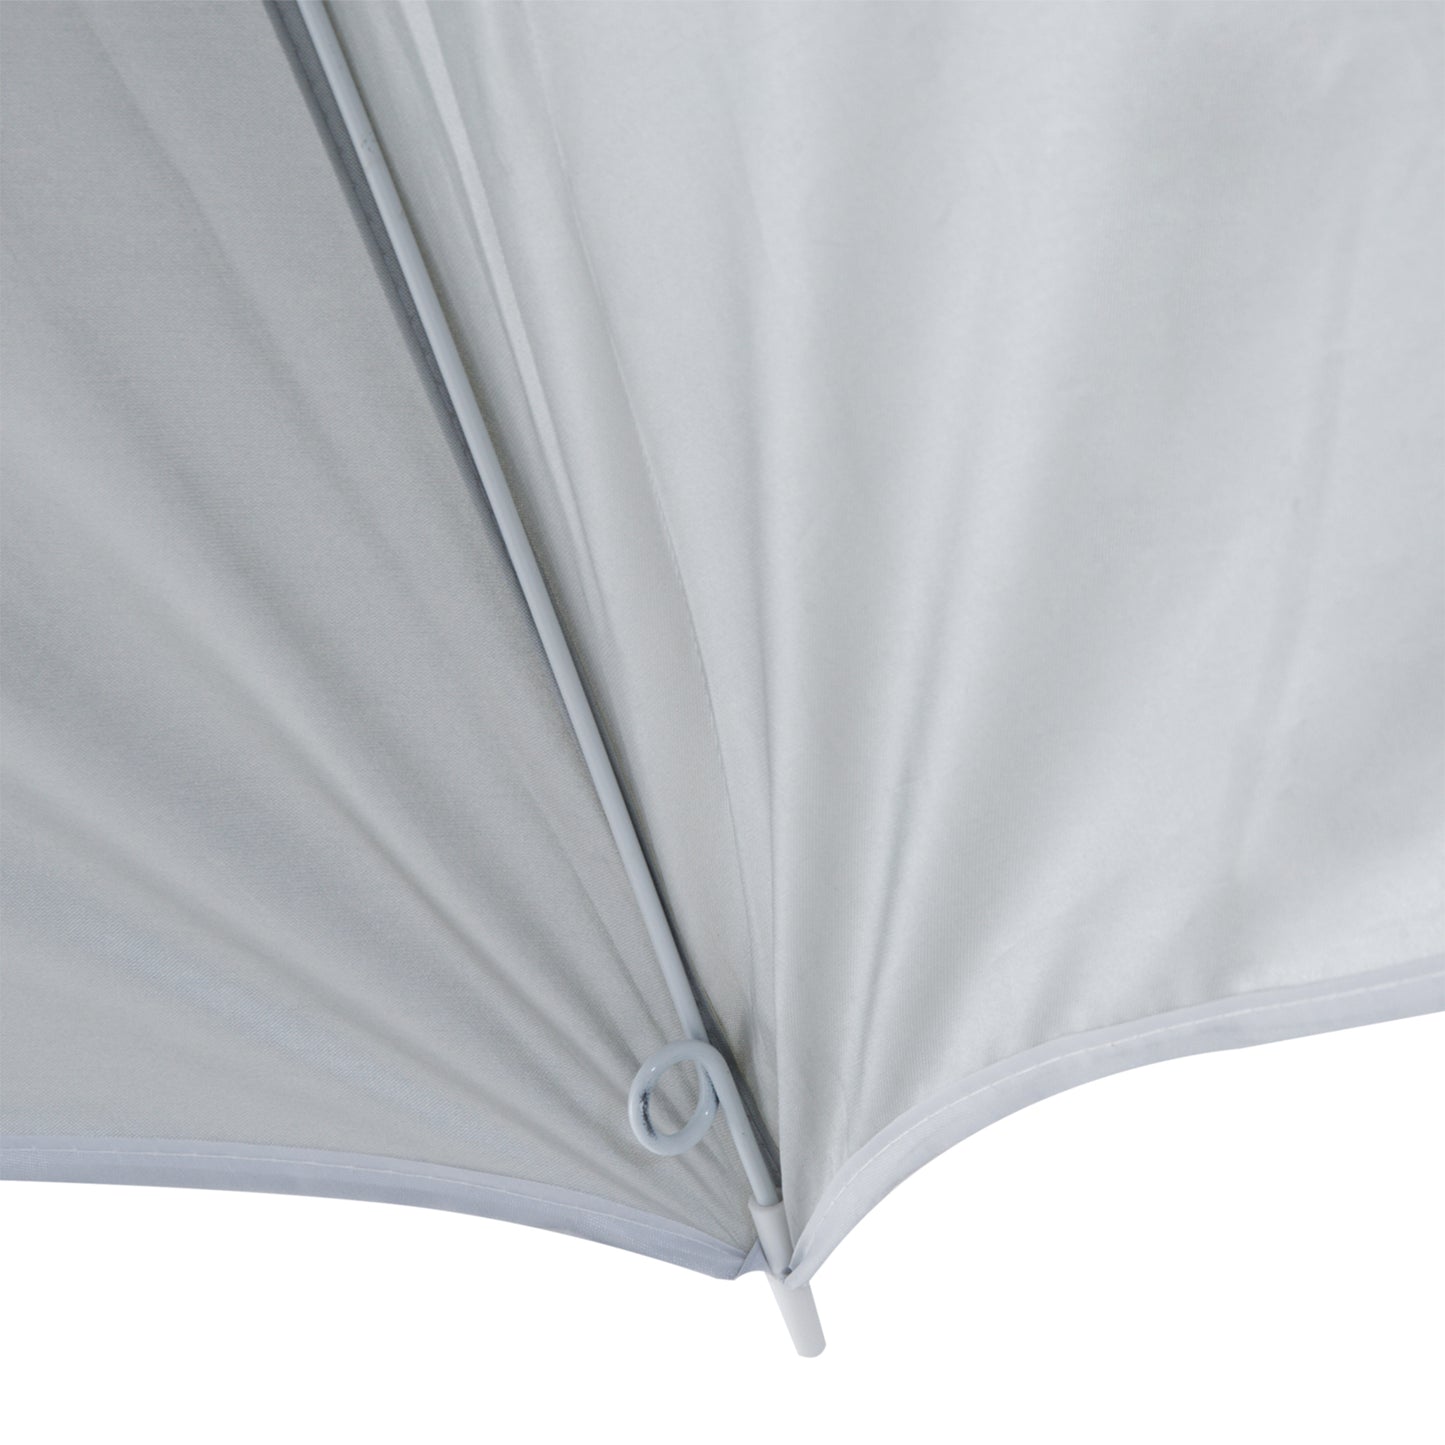 Outsunny 2.2M Fishing Umbrella Parasol W/ Side-Cream White